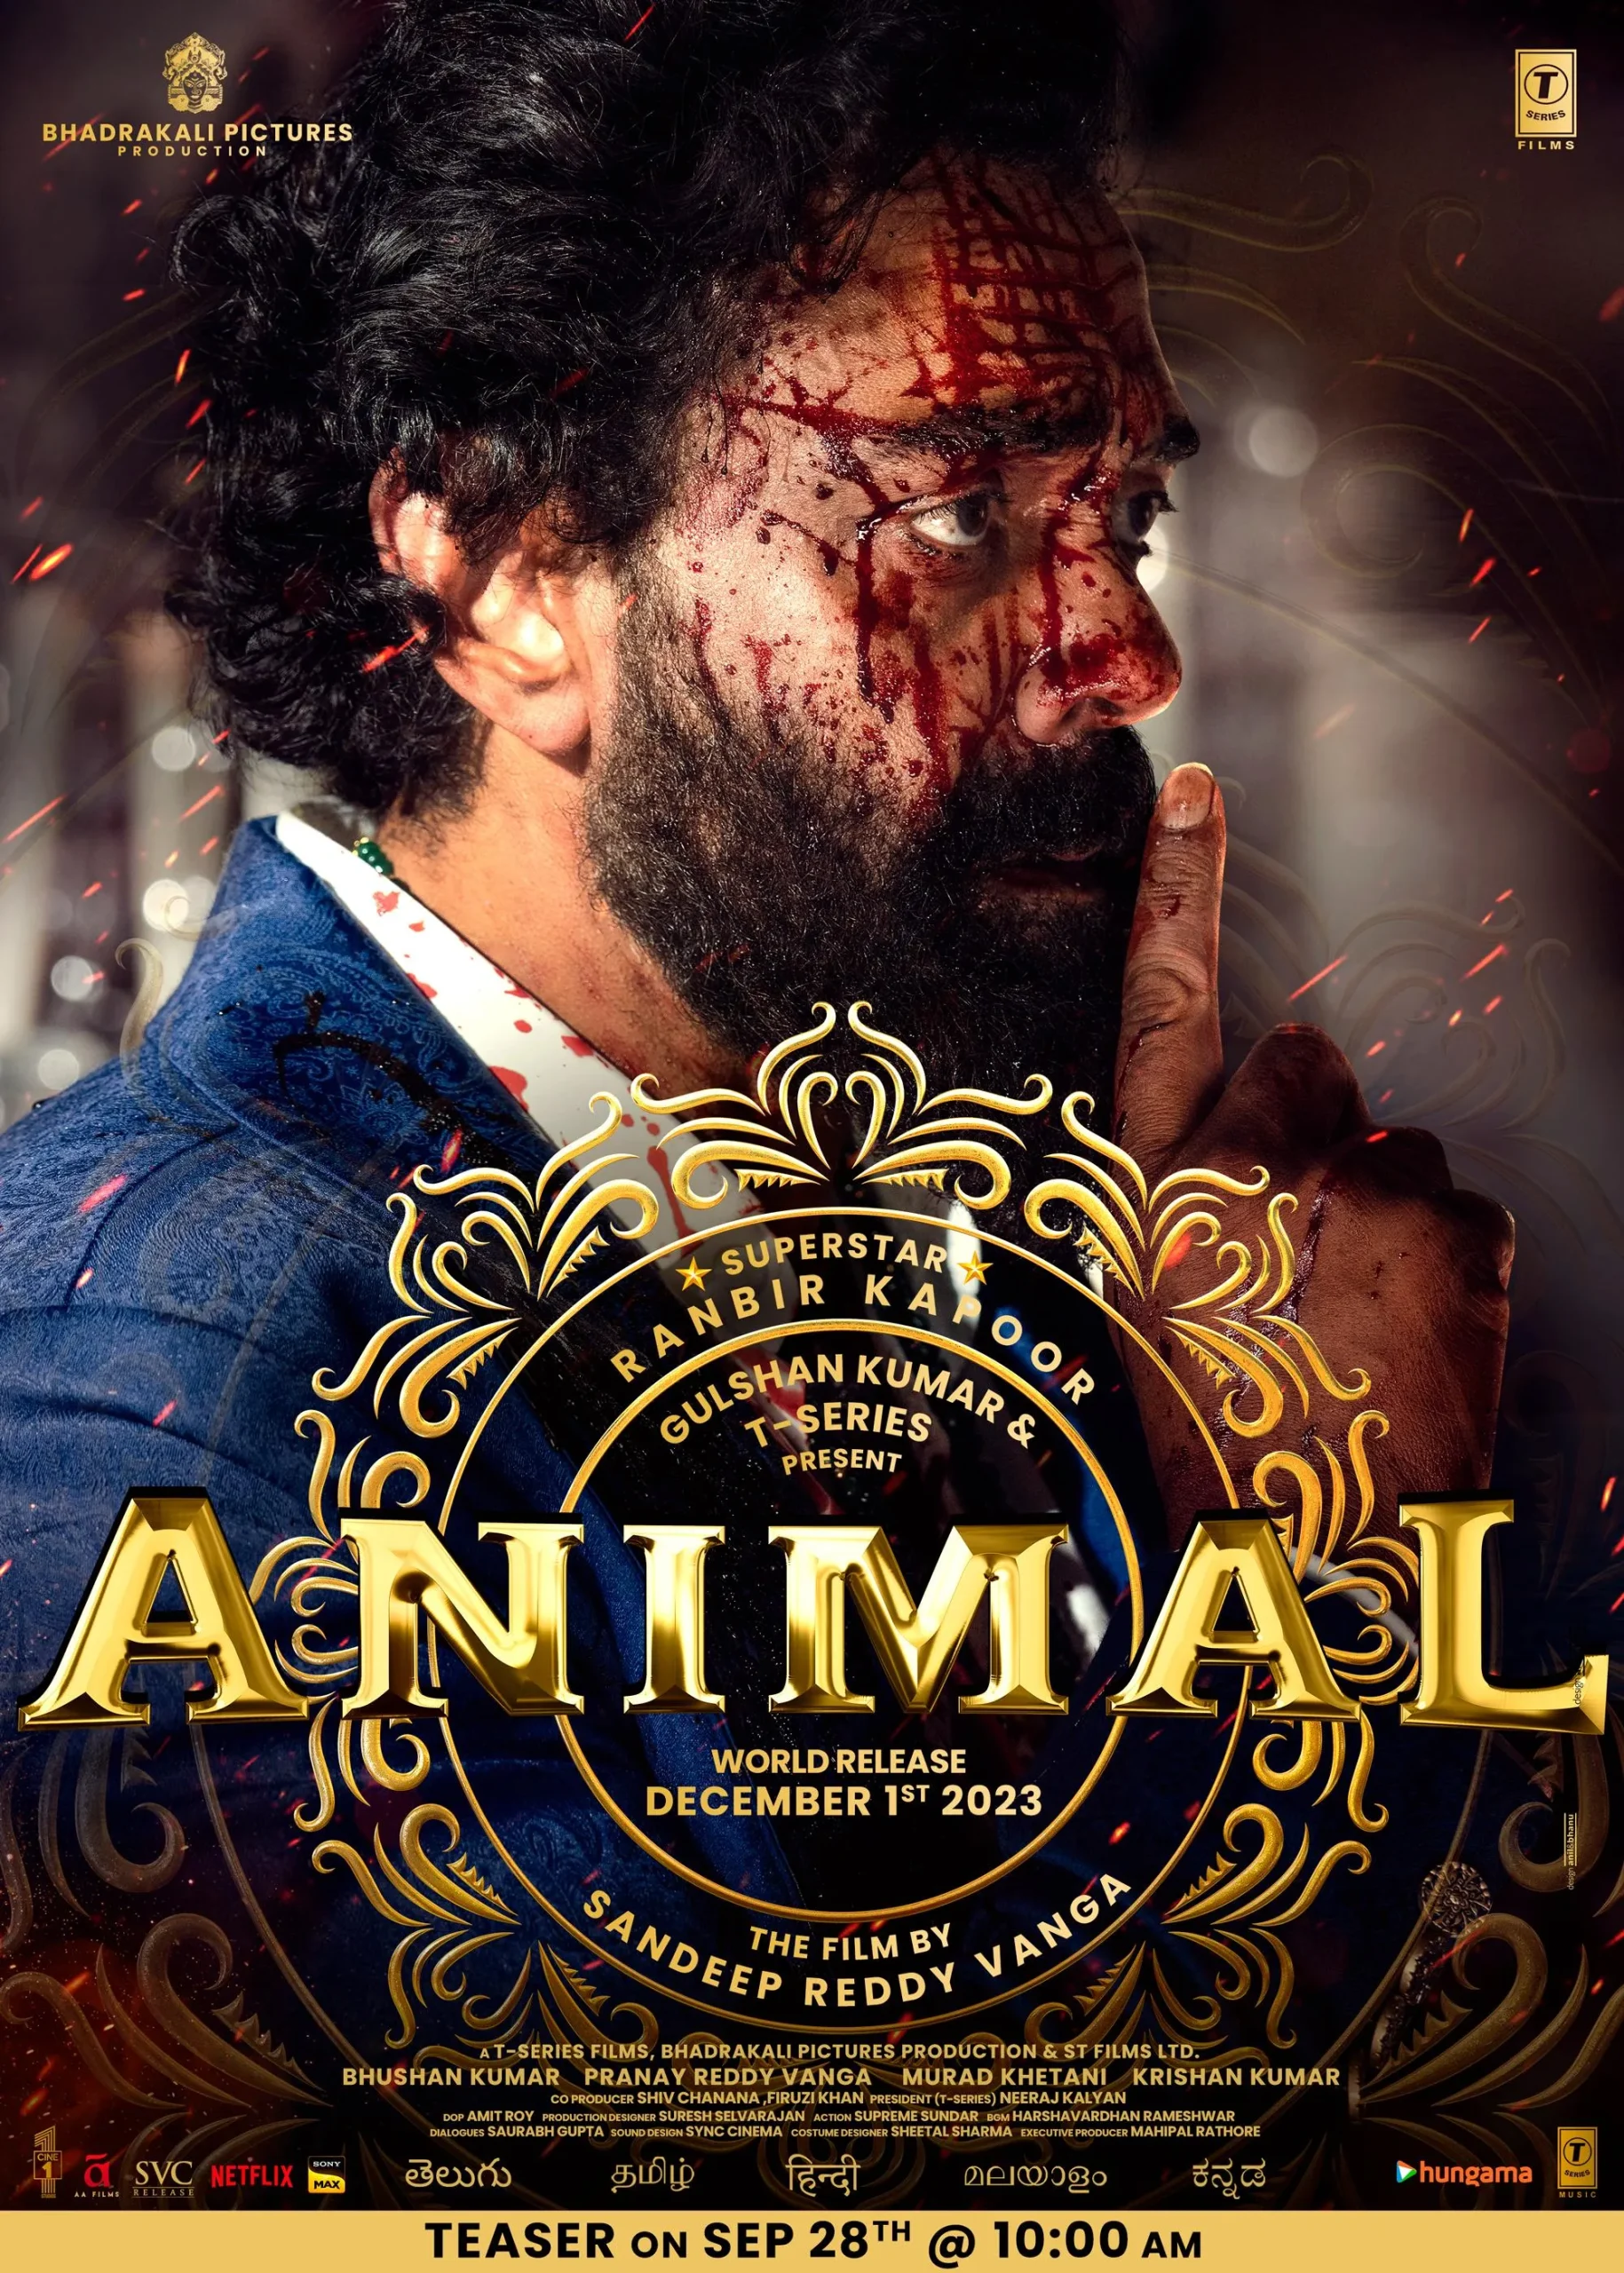 animal movie